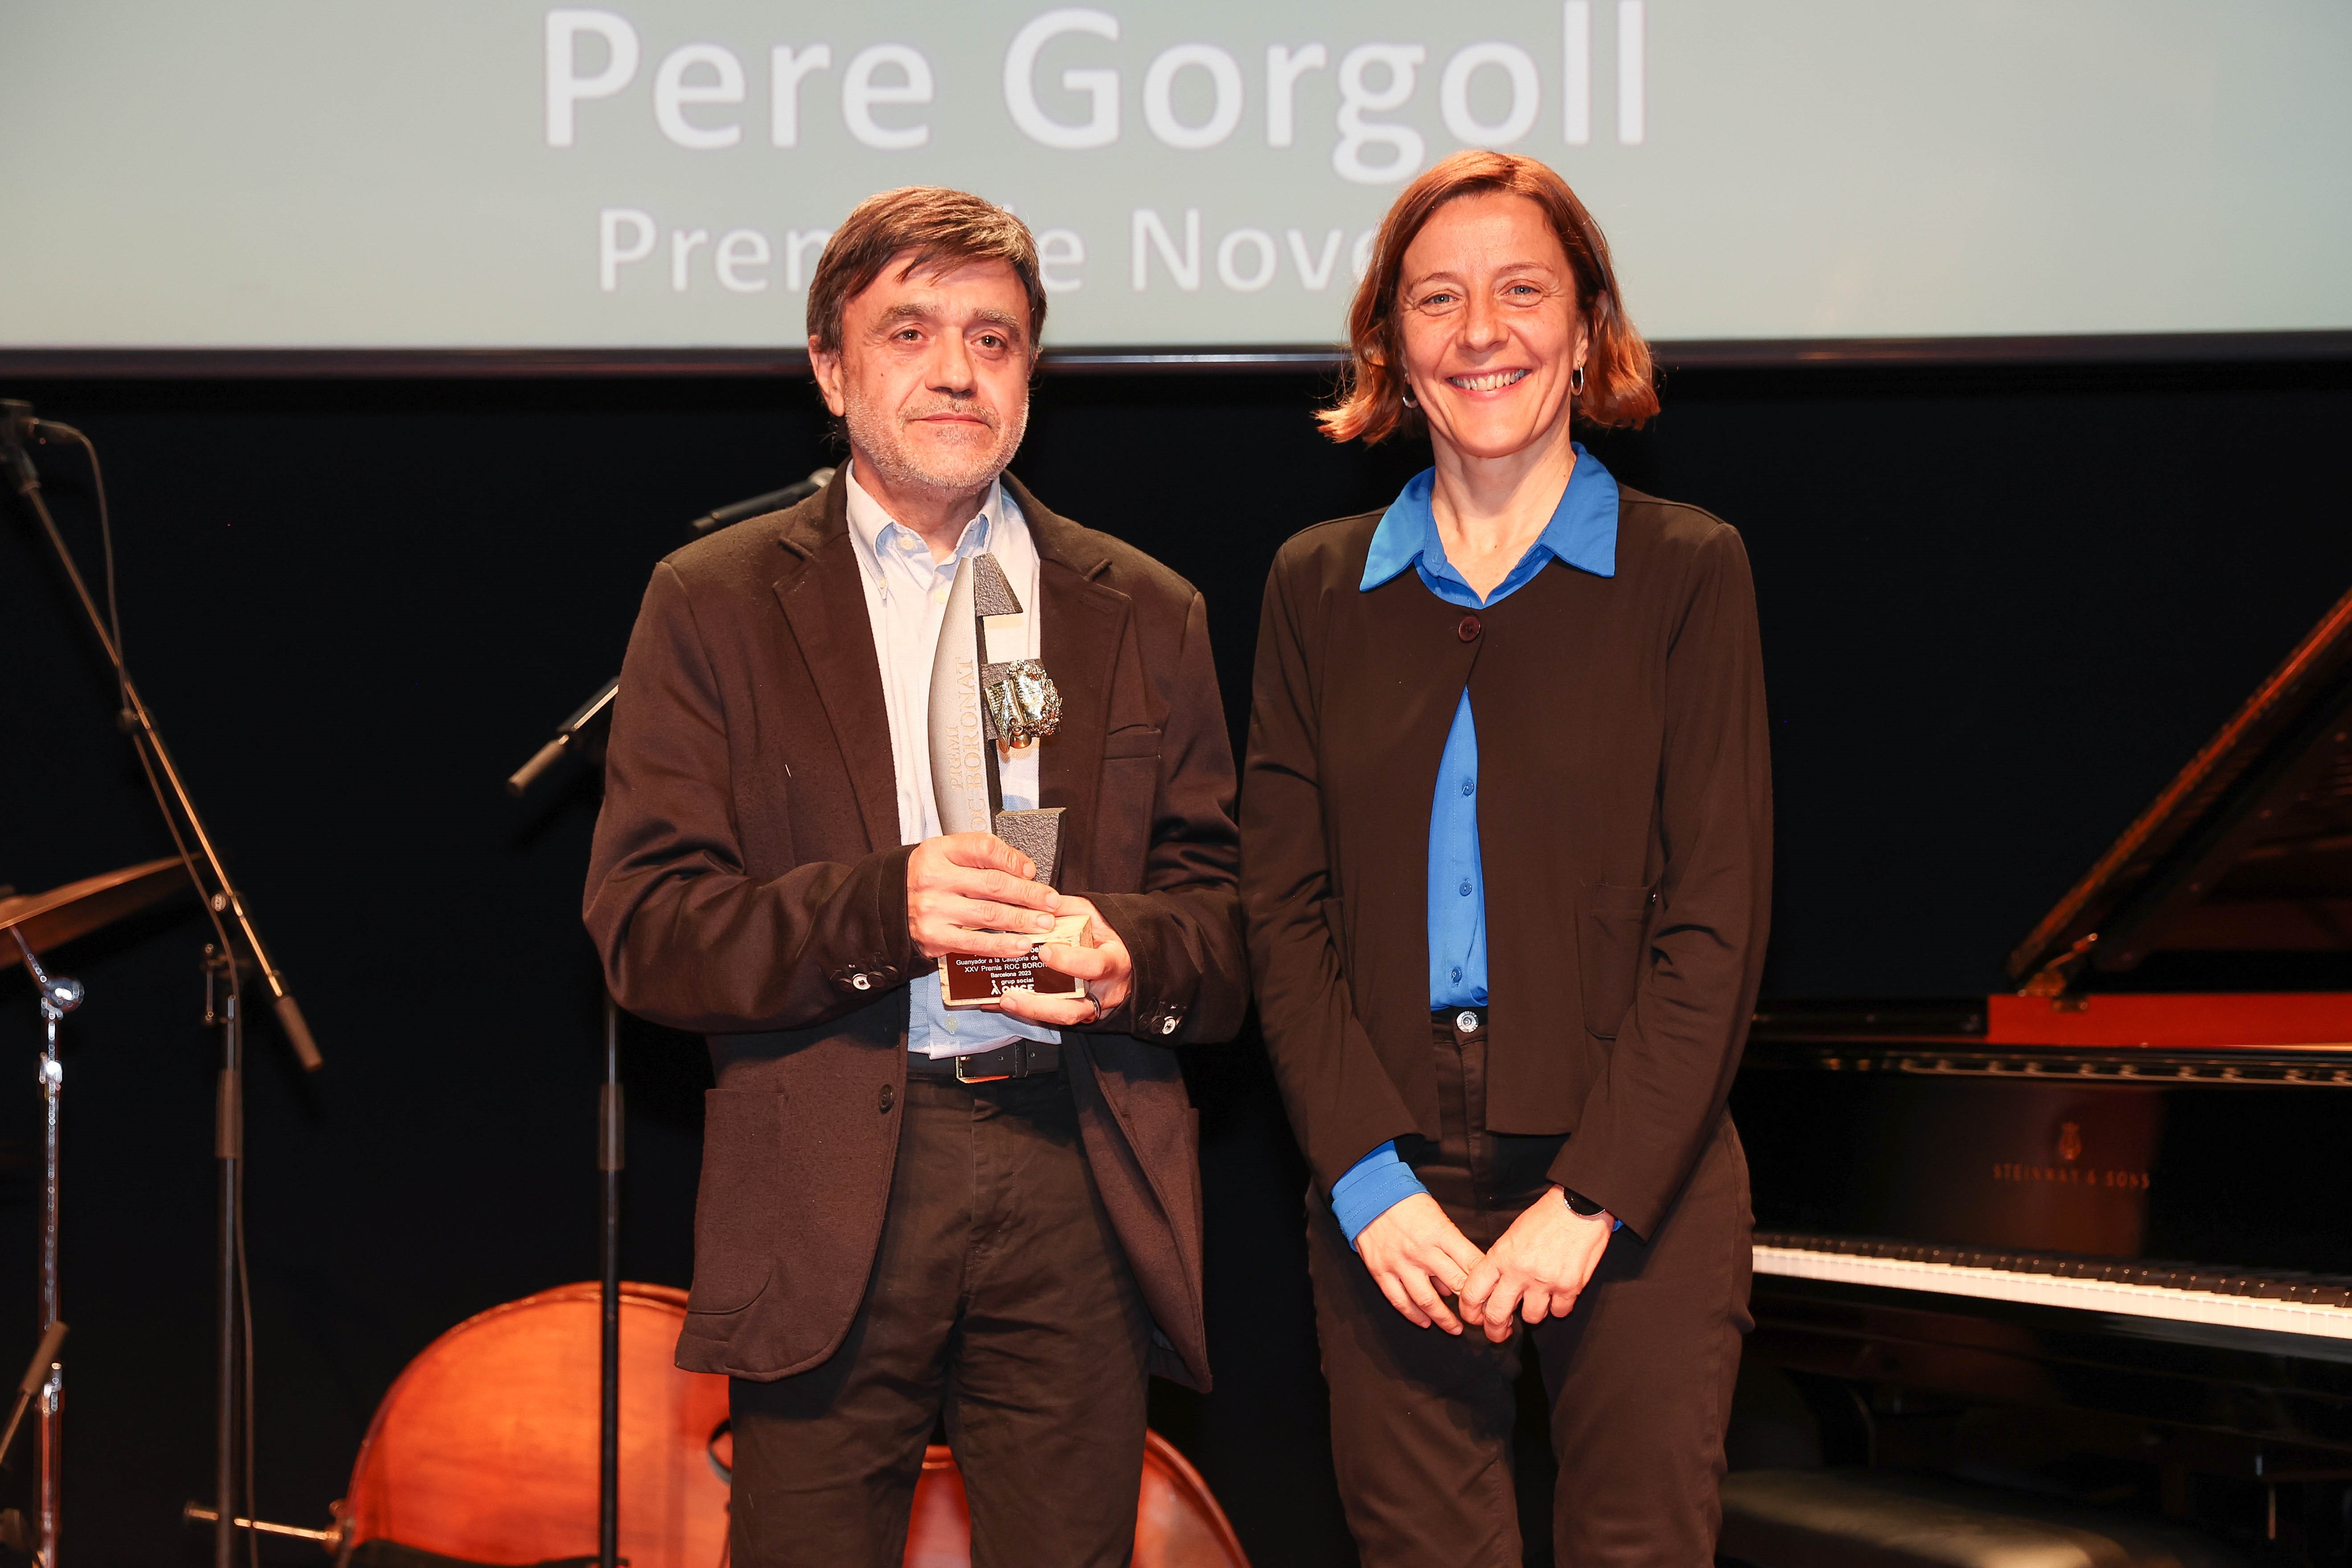 Imatge de Pere Gorgoll, guanyador del Concurs Roc Boronat, recollint el premi